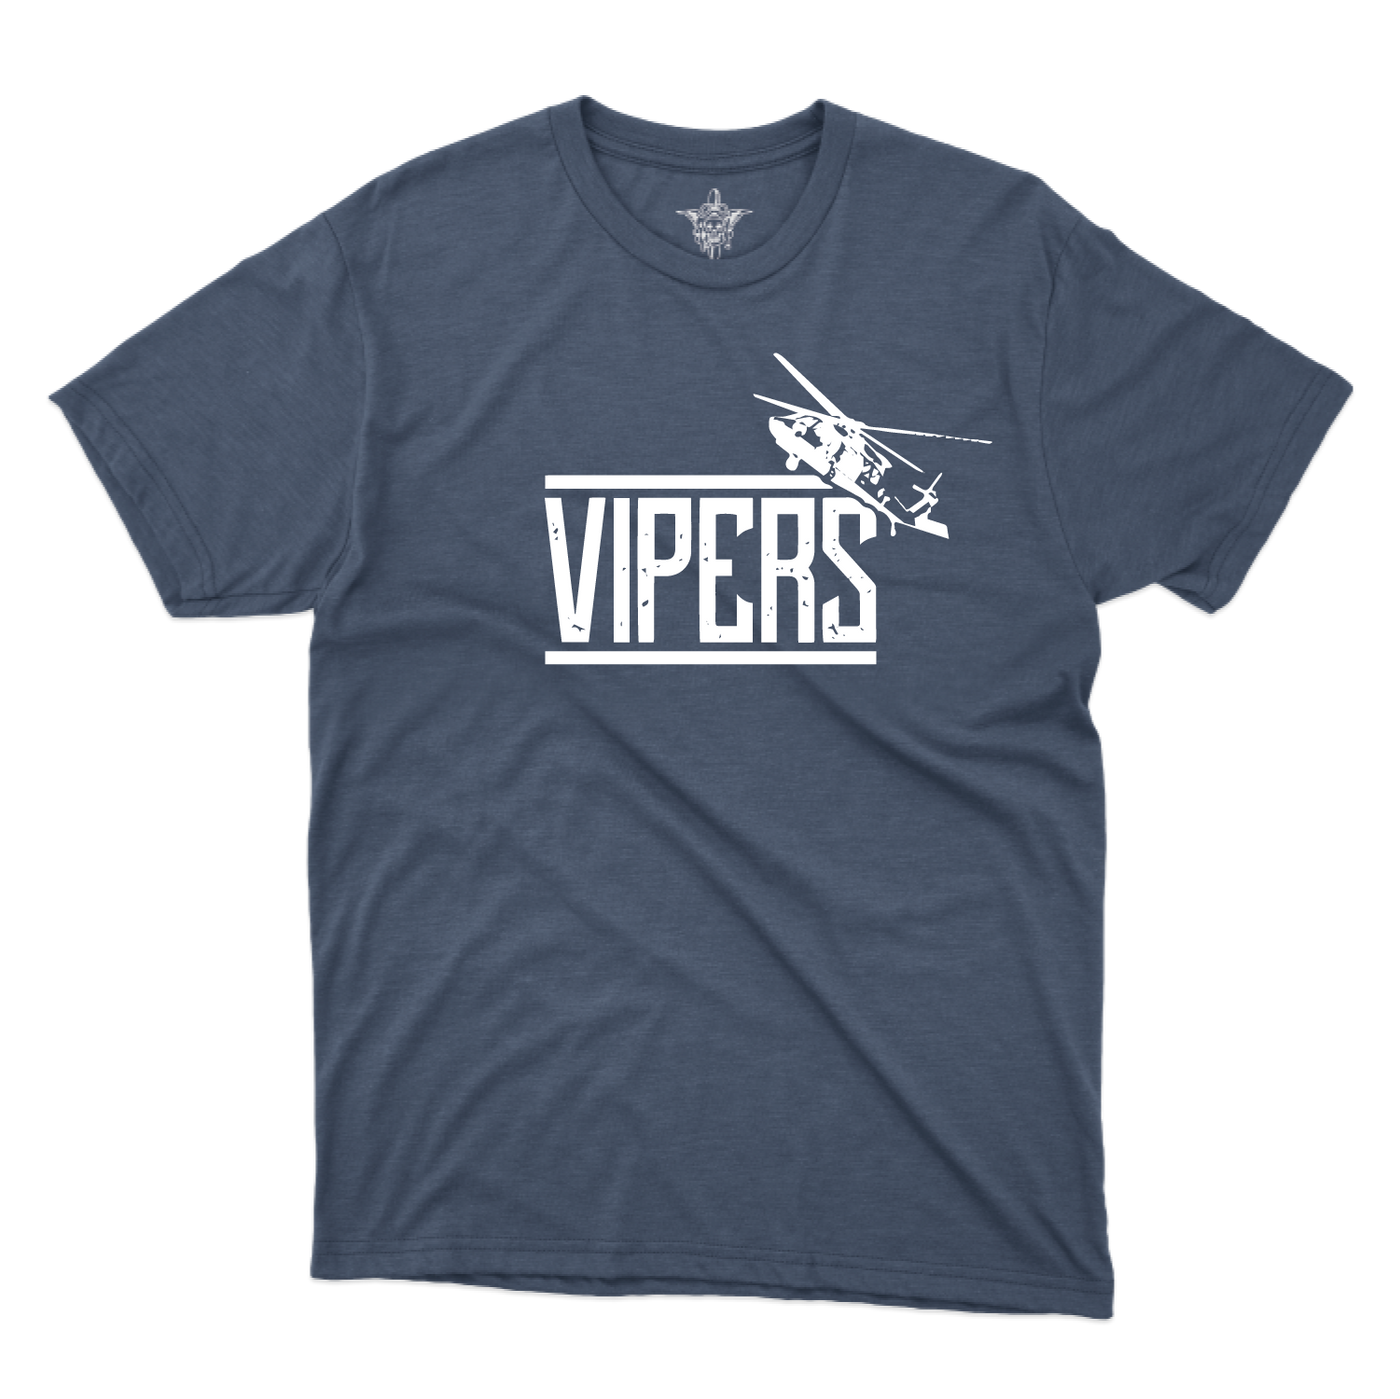 C Co, 2-82 AHB "Vipers" V2 T-Shirts